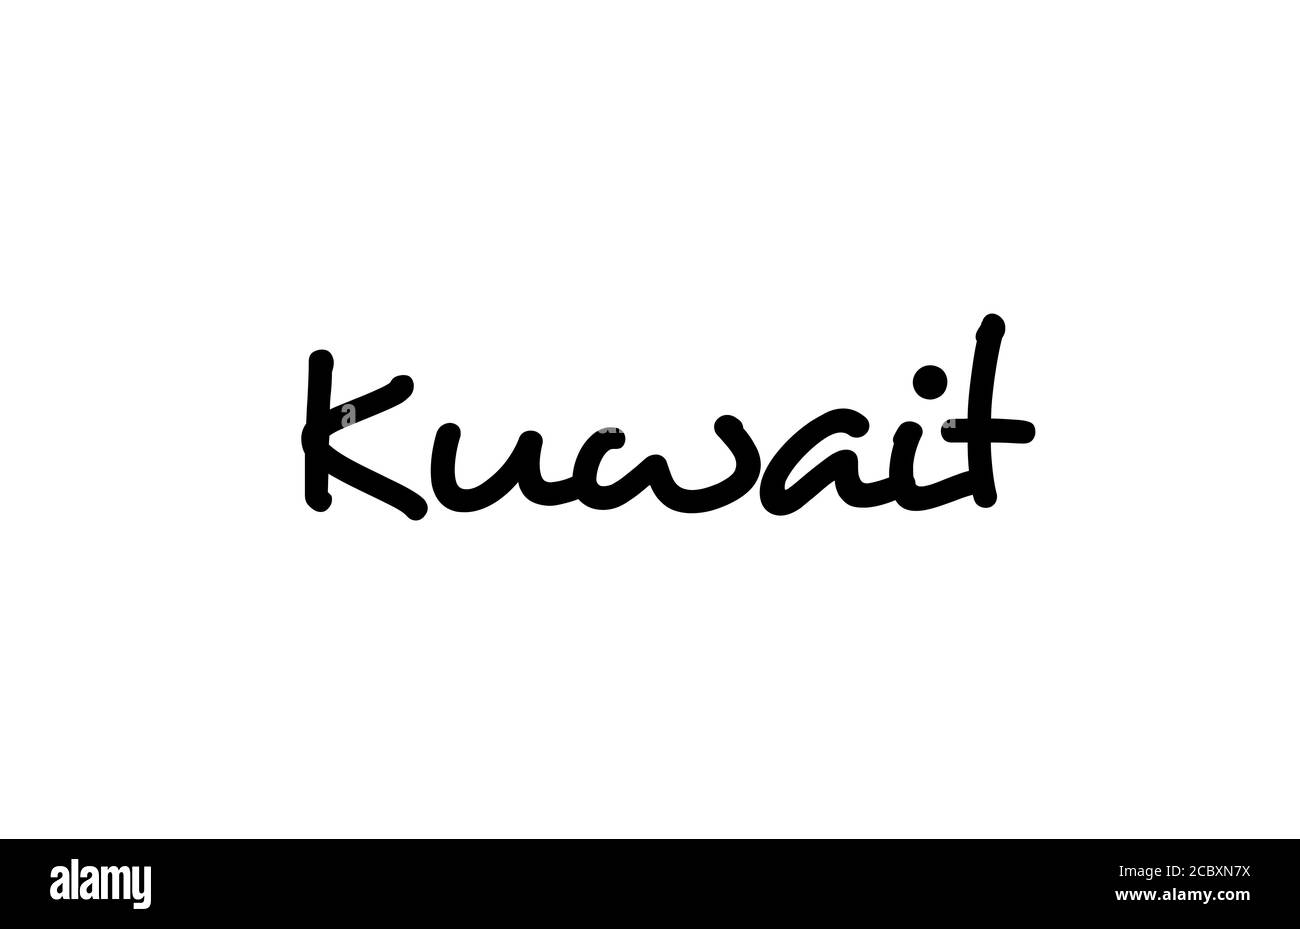 Kuwait Stadt handgeschriebener Text Wort Hand Schriftzug. Kalligrafietext. Typografie in schwarzer Farbe Stock Vektor